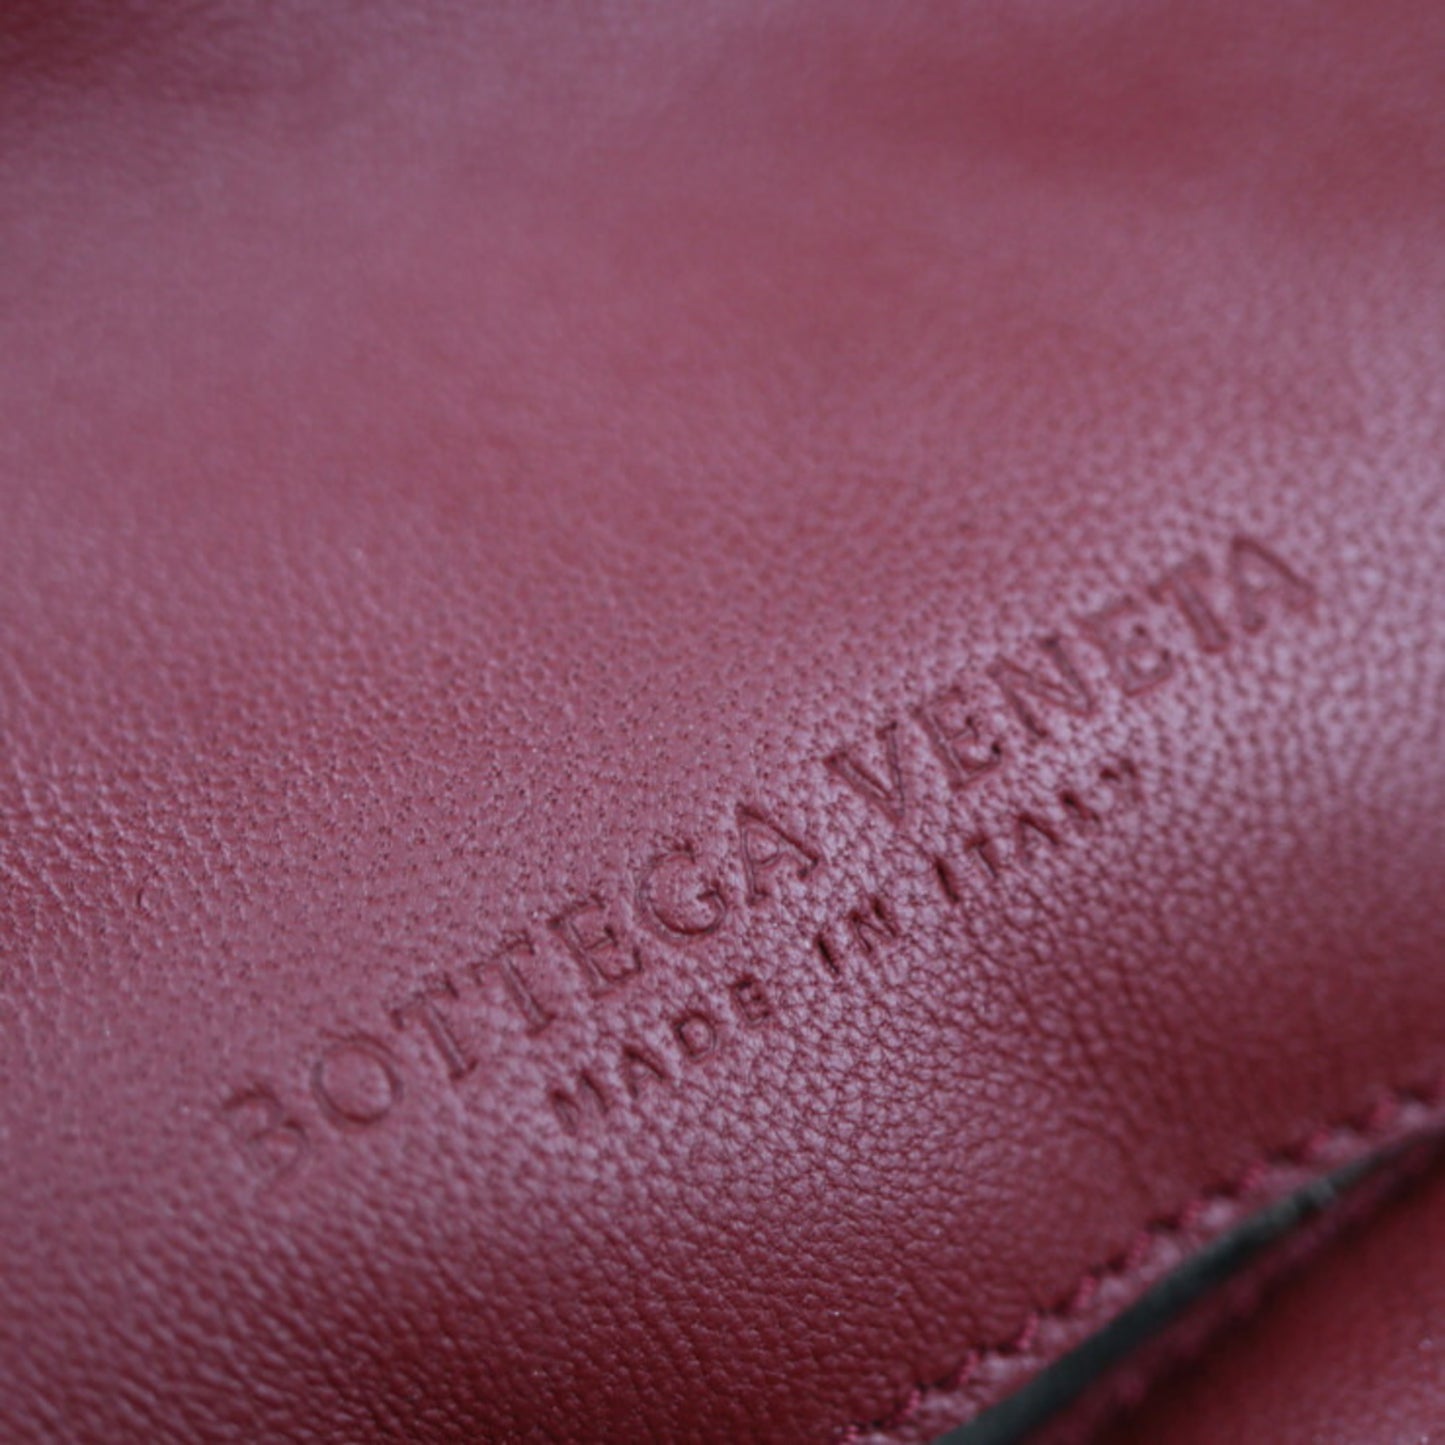 Bottega Veneta Women's Red Leather Handbag in Red